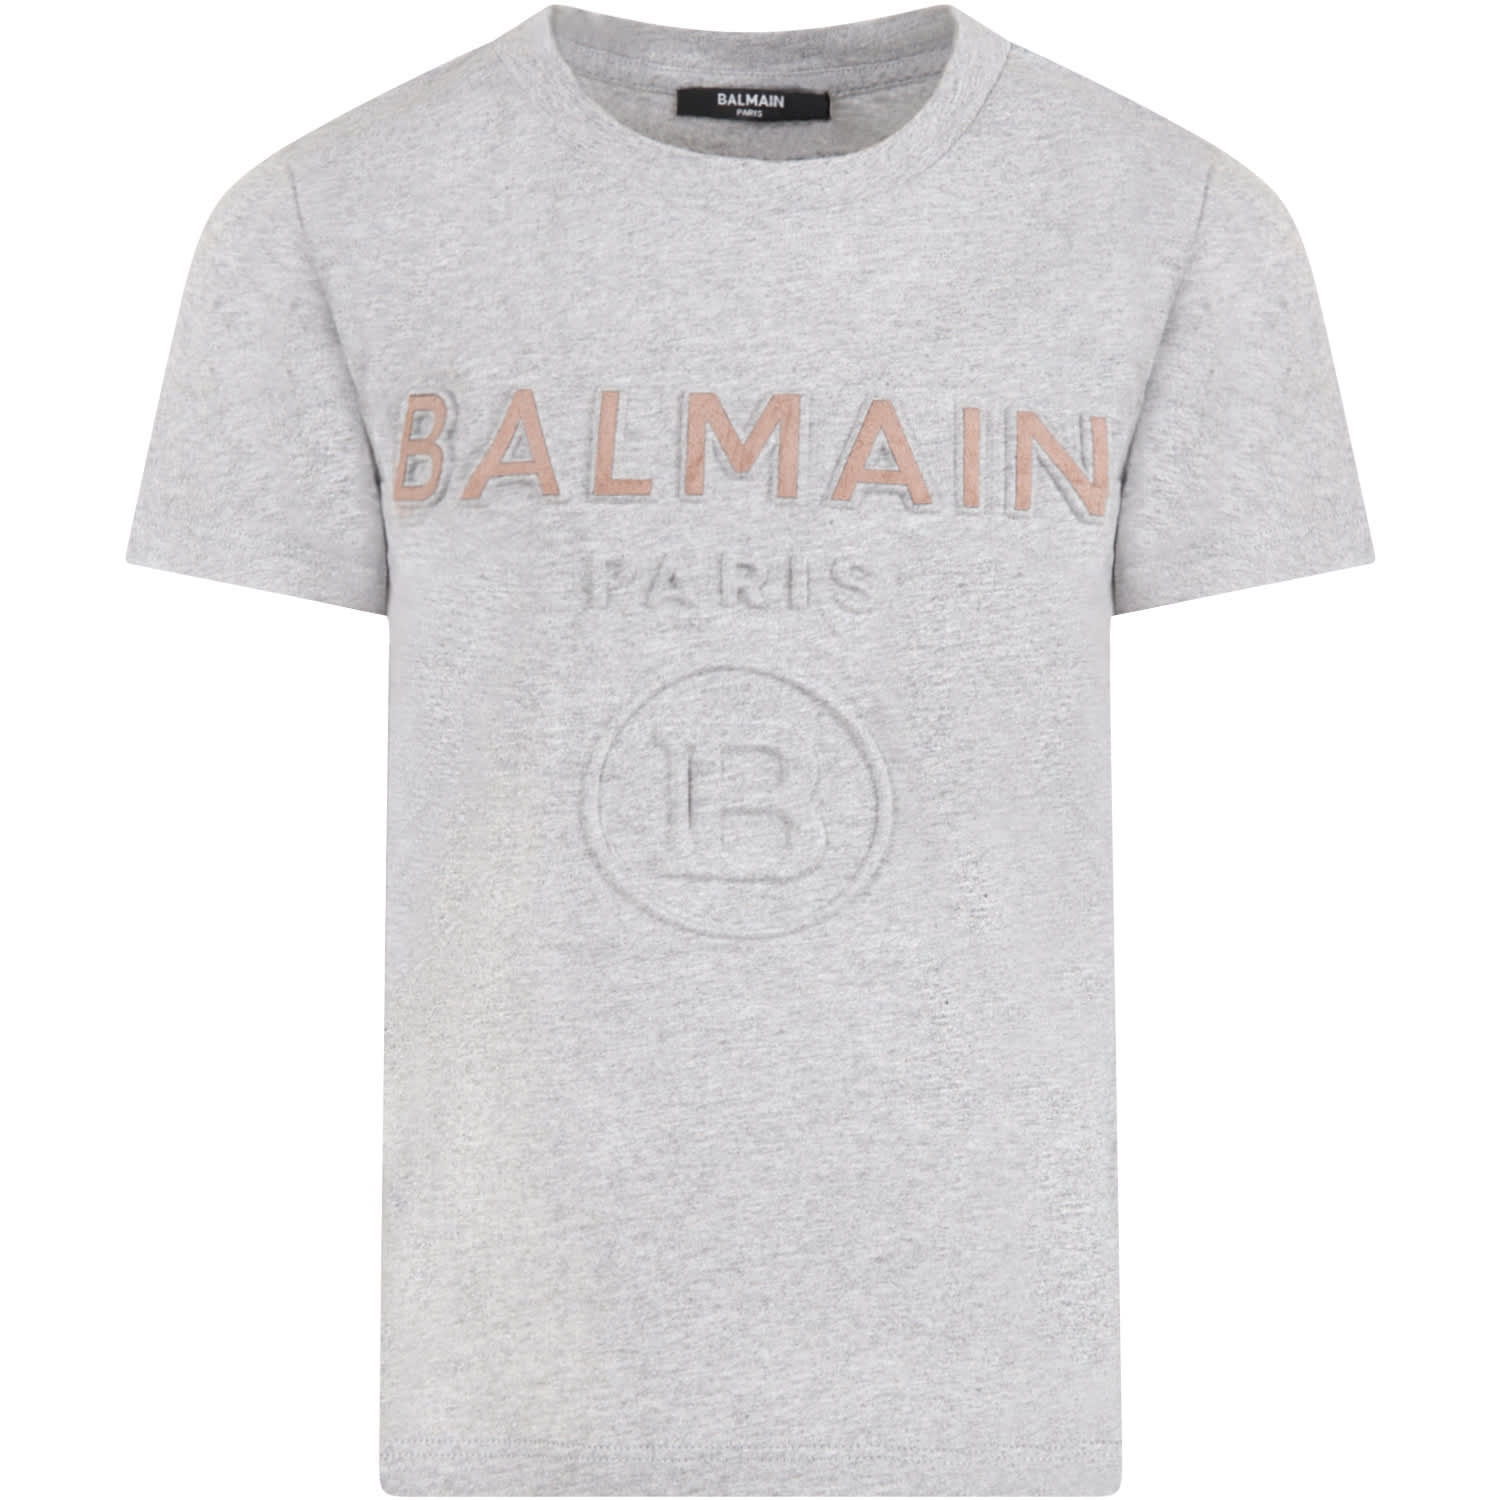 Balmain Grey T-shirt For Kids With Logos